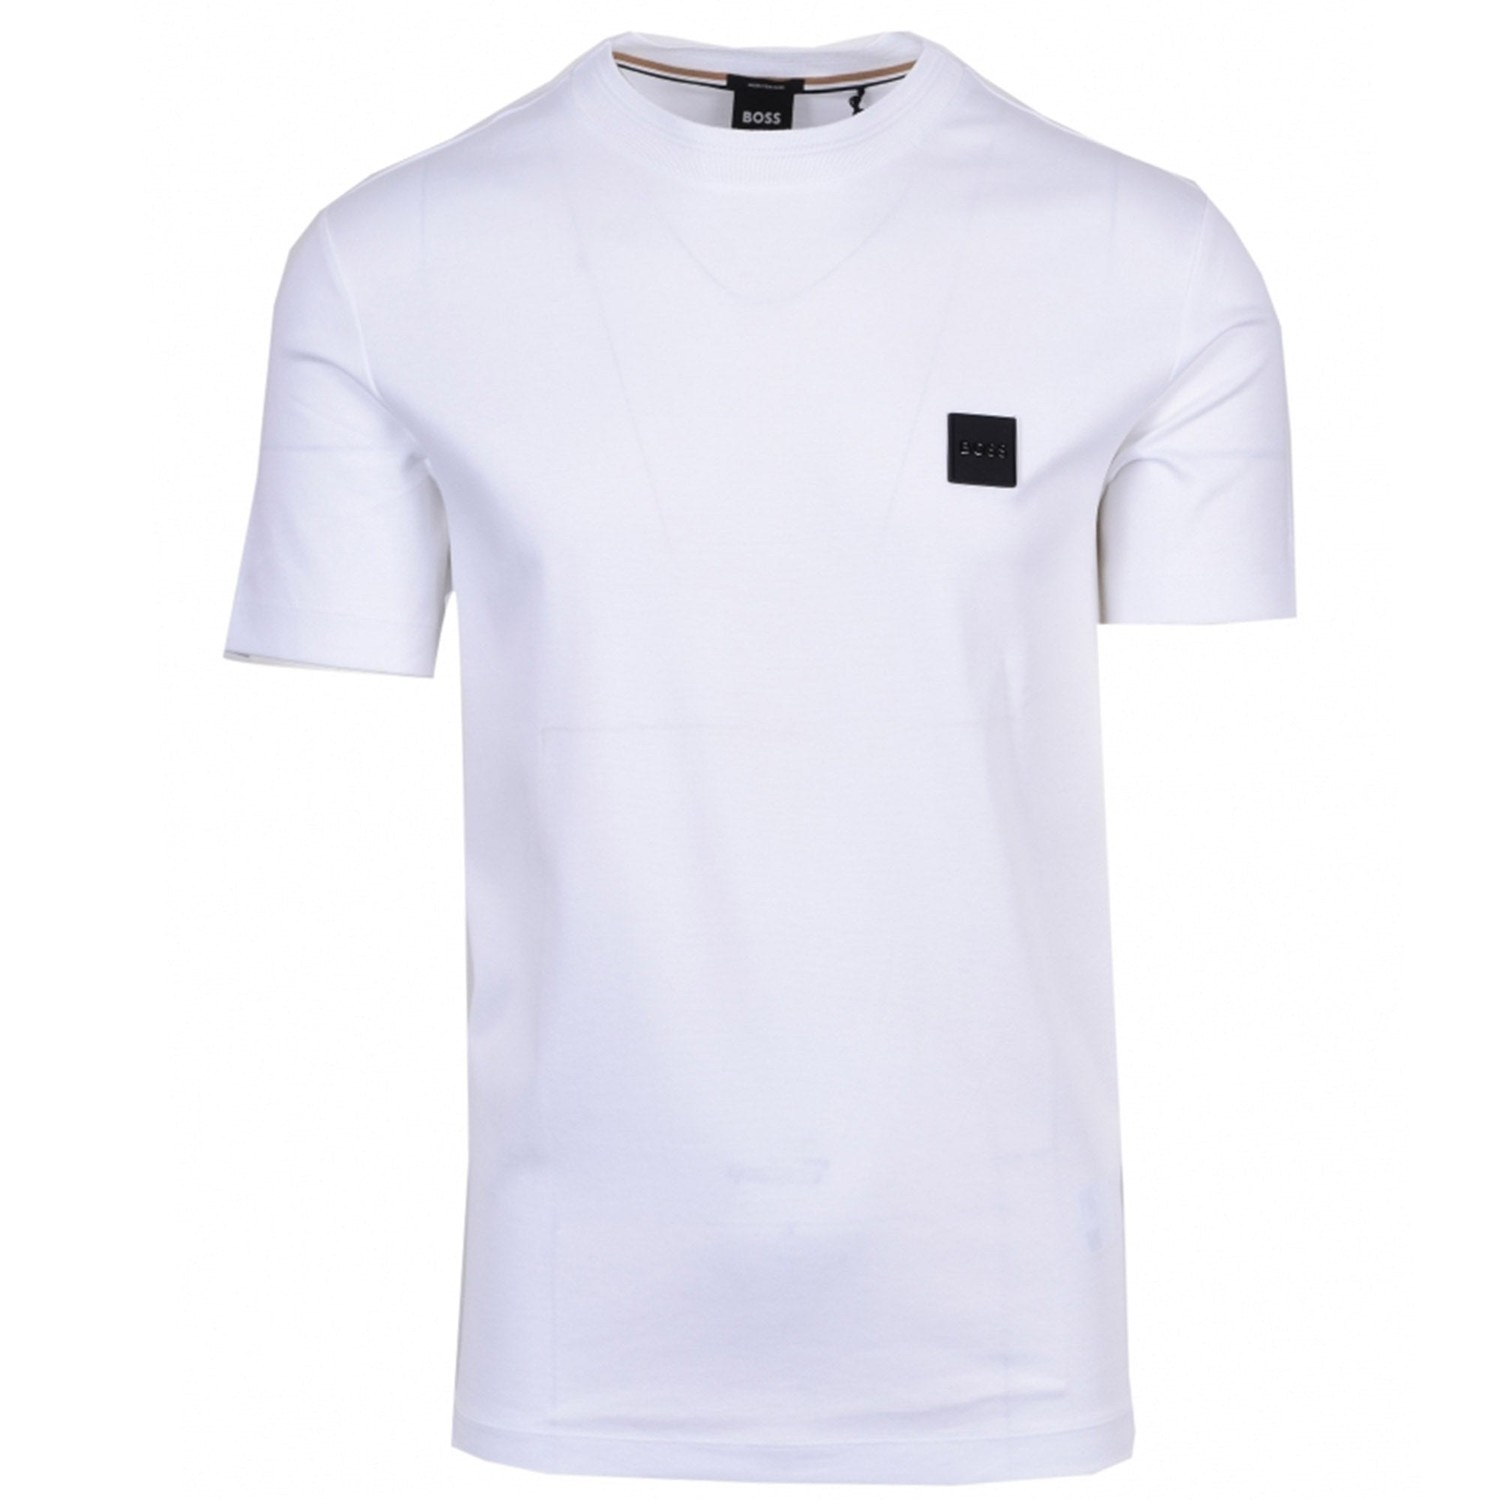 Hugo Boss Mens Classic Logo T Shirt White S